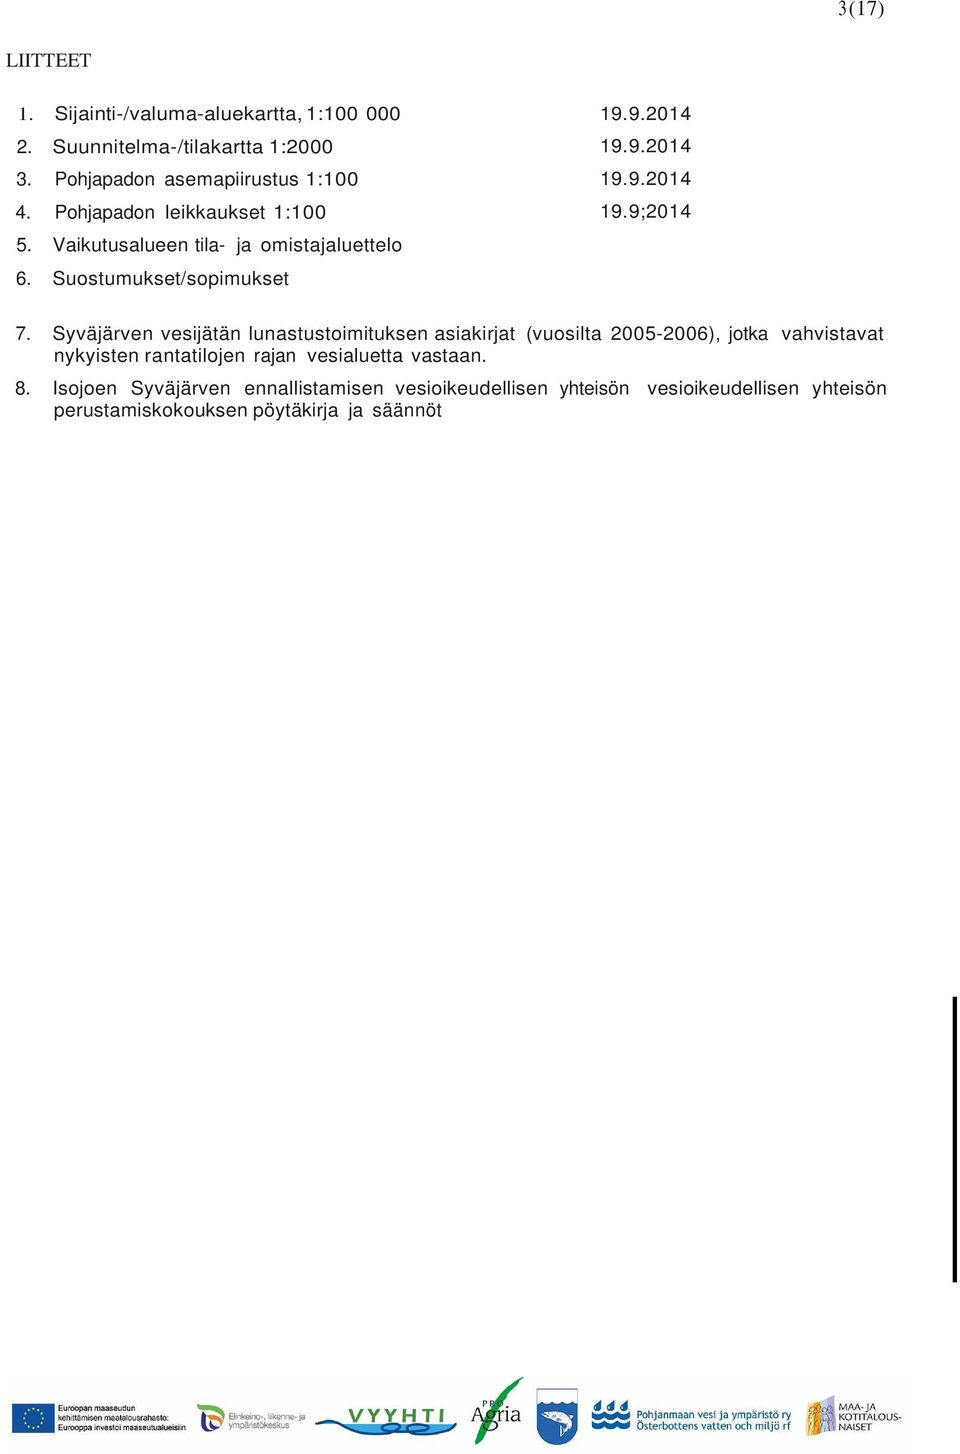 Syväjärven vesijätän lunastustoimituksen asiakirjat (vuosilta 2005-2006), jotka vahvistavat nykyisten rantatilojen rajan vesialuetta